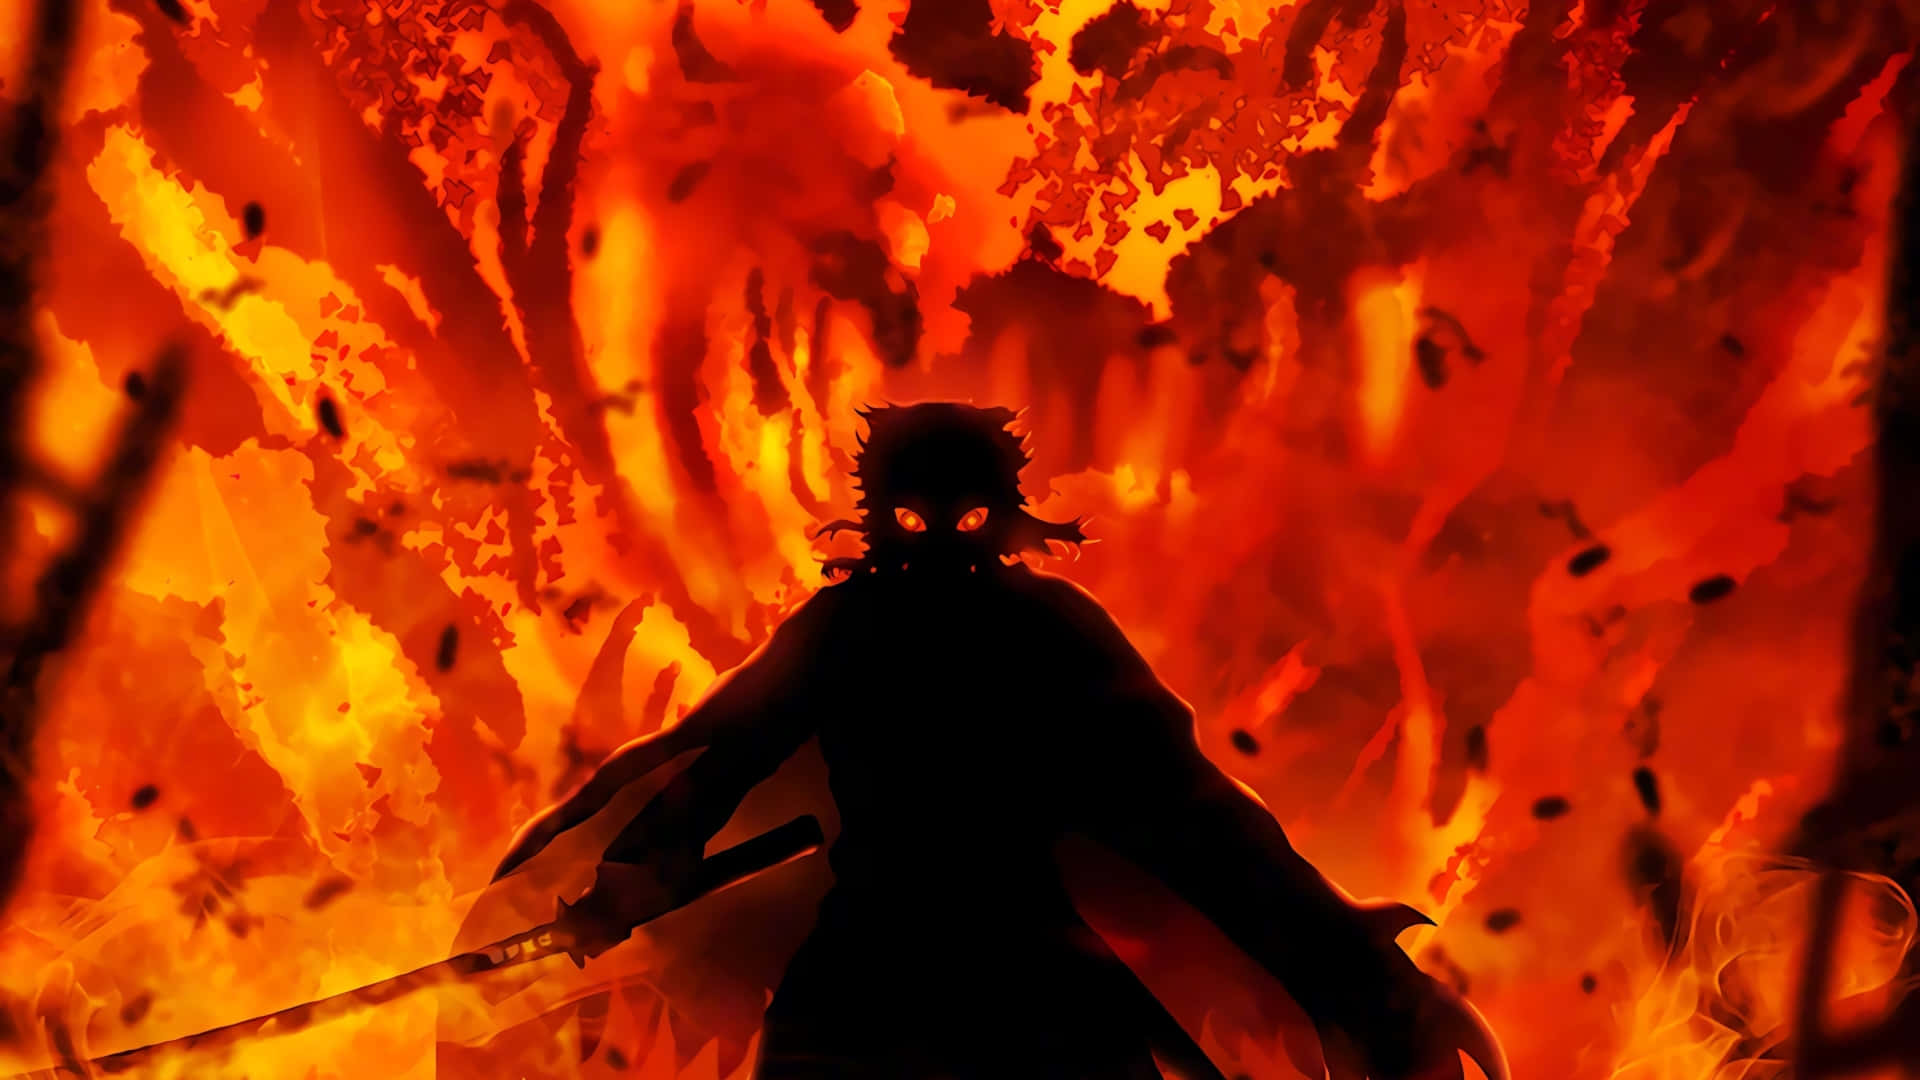 Rengoku's Flaming Sword in Demon Slayer Wallpaper